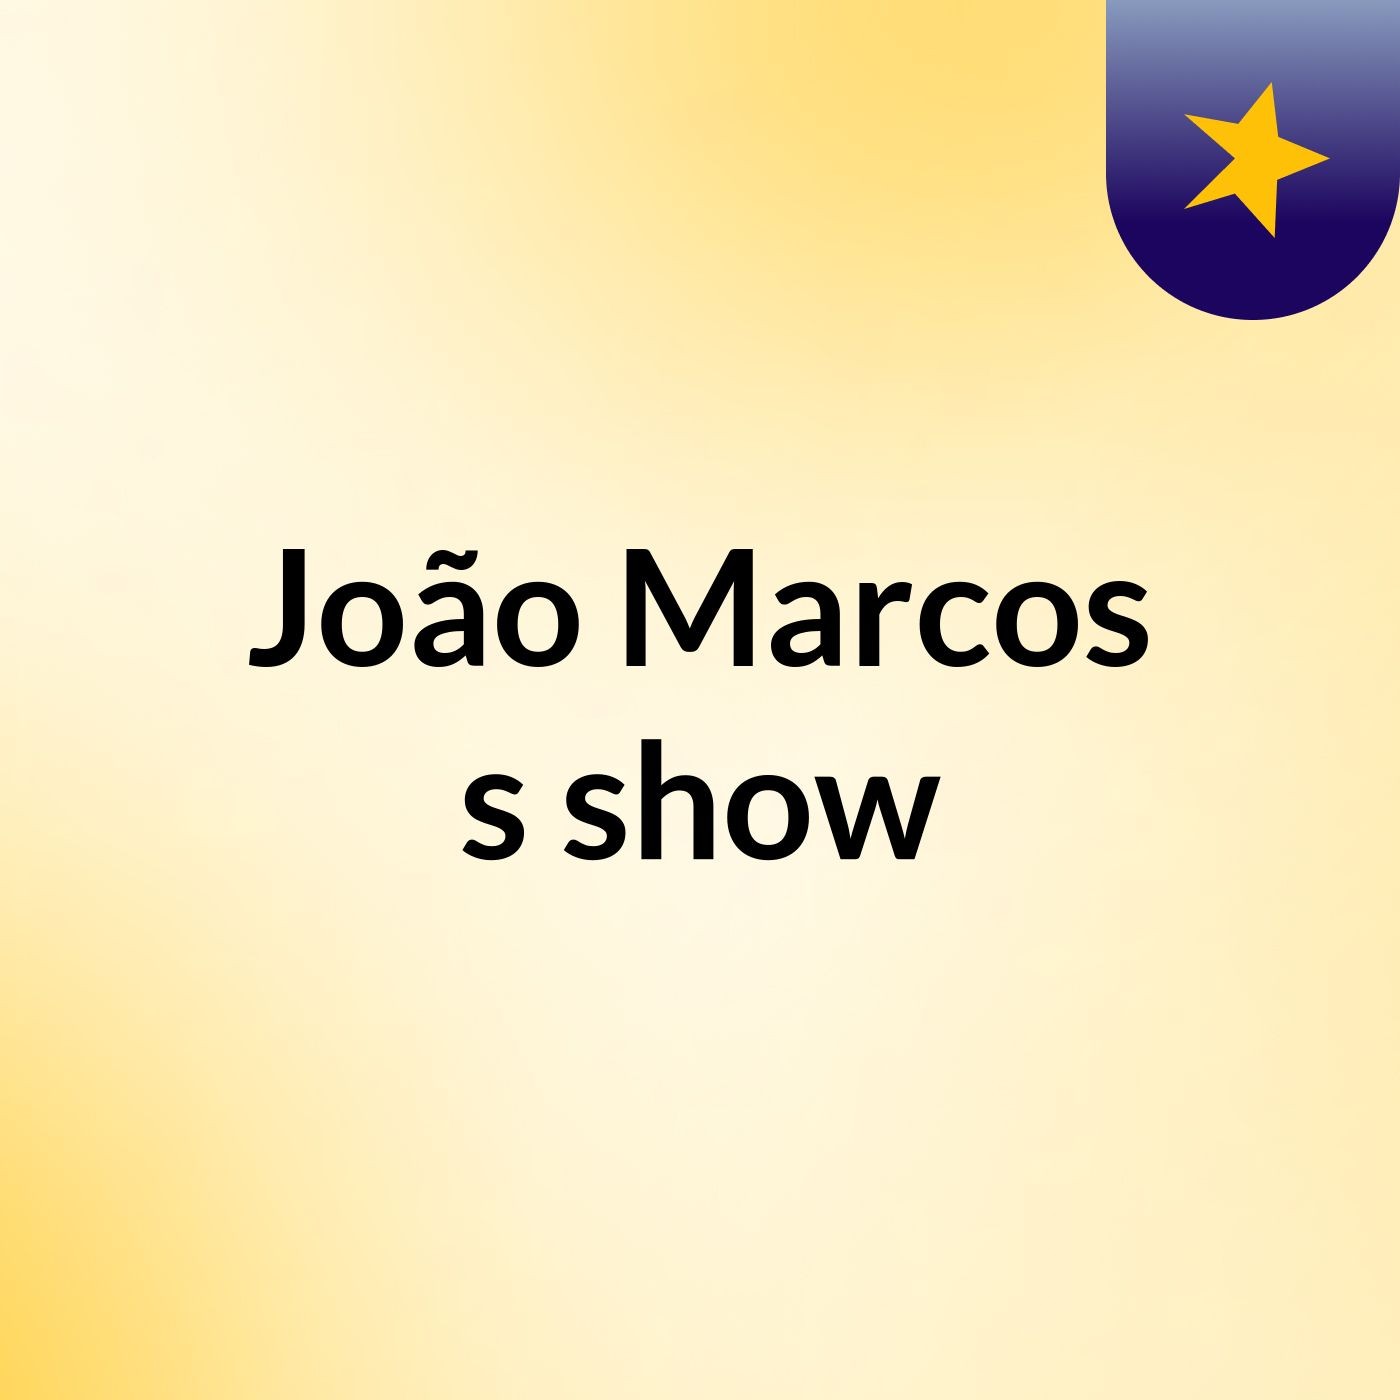 João Marcos's show